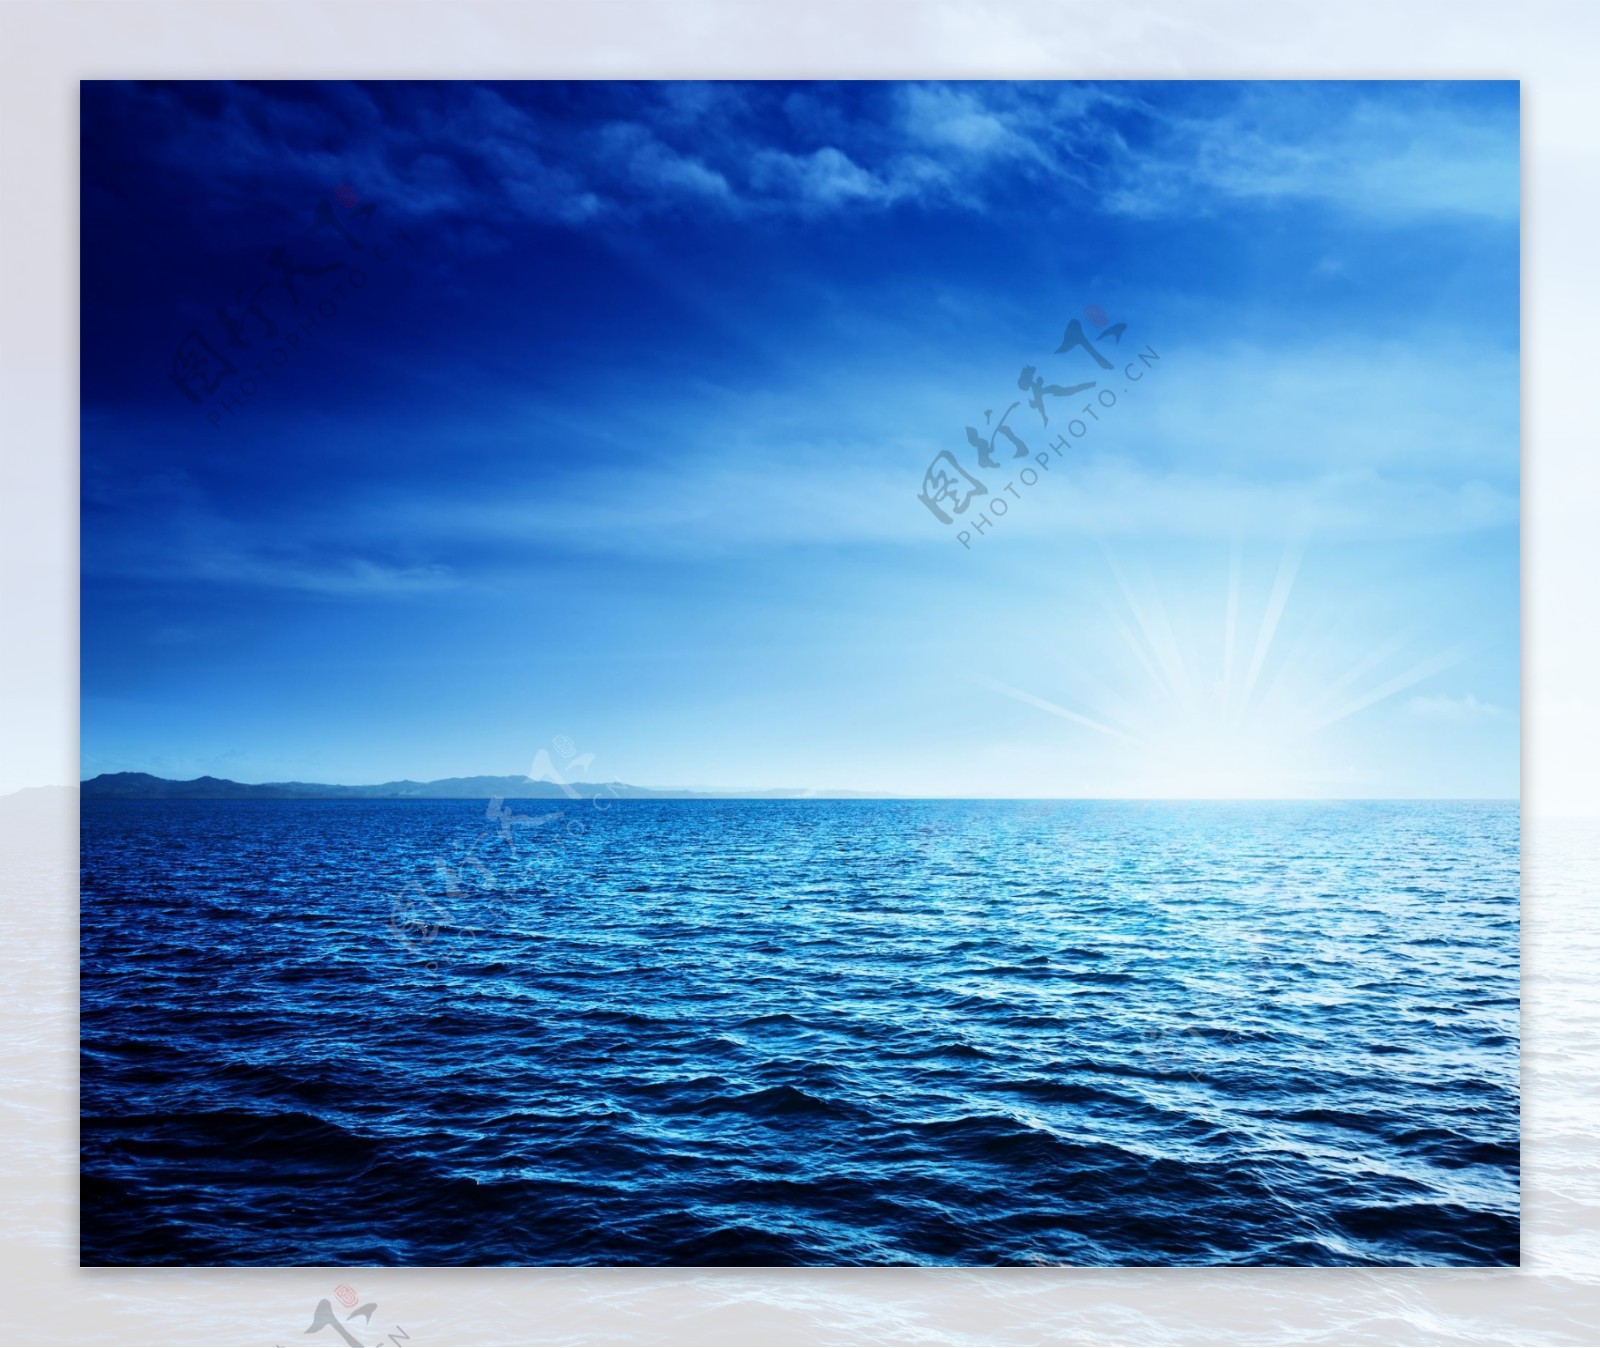 壁纸1680×960夏威夷的碧海蓝天 夏威夷海滩图片 海面日出日落壁纸,夏威夷浪漫海滩壁纸图片-风景壁纸-风景图片素材-桌面壁纸